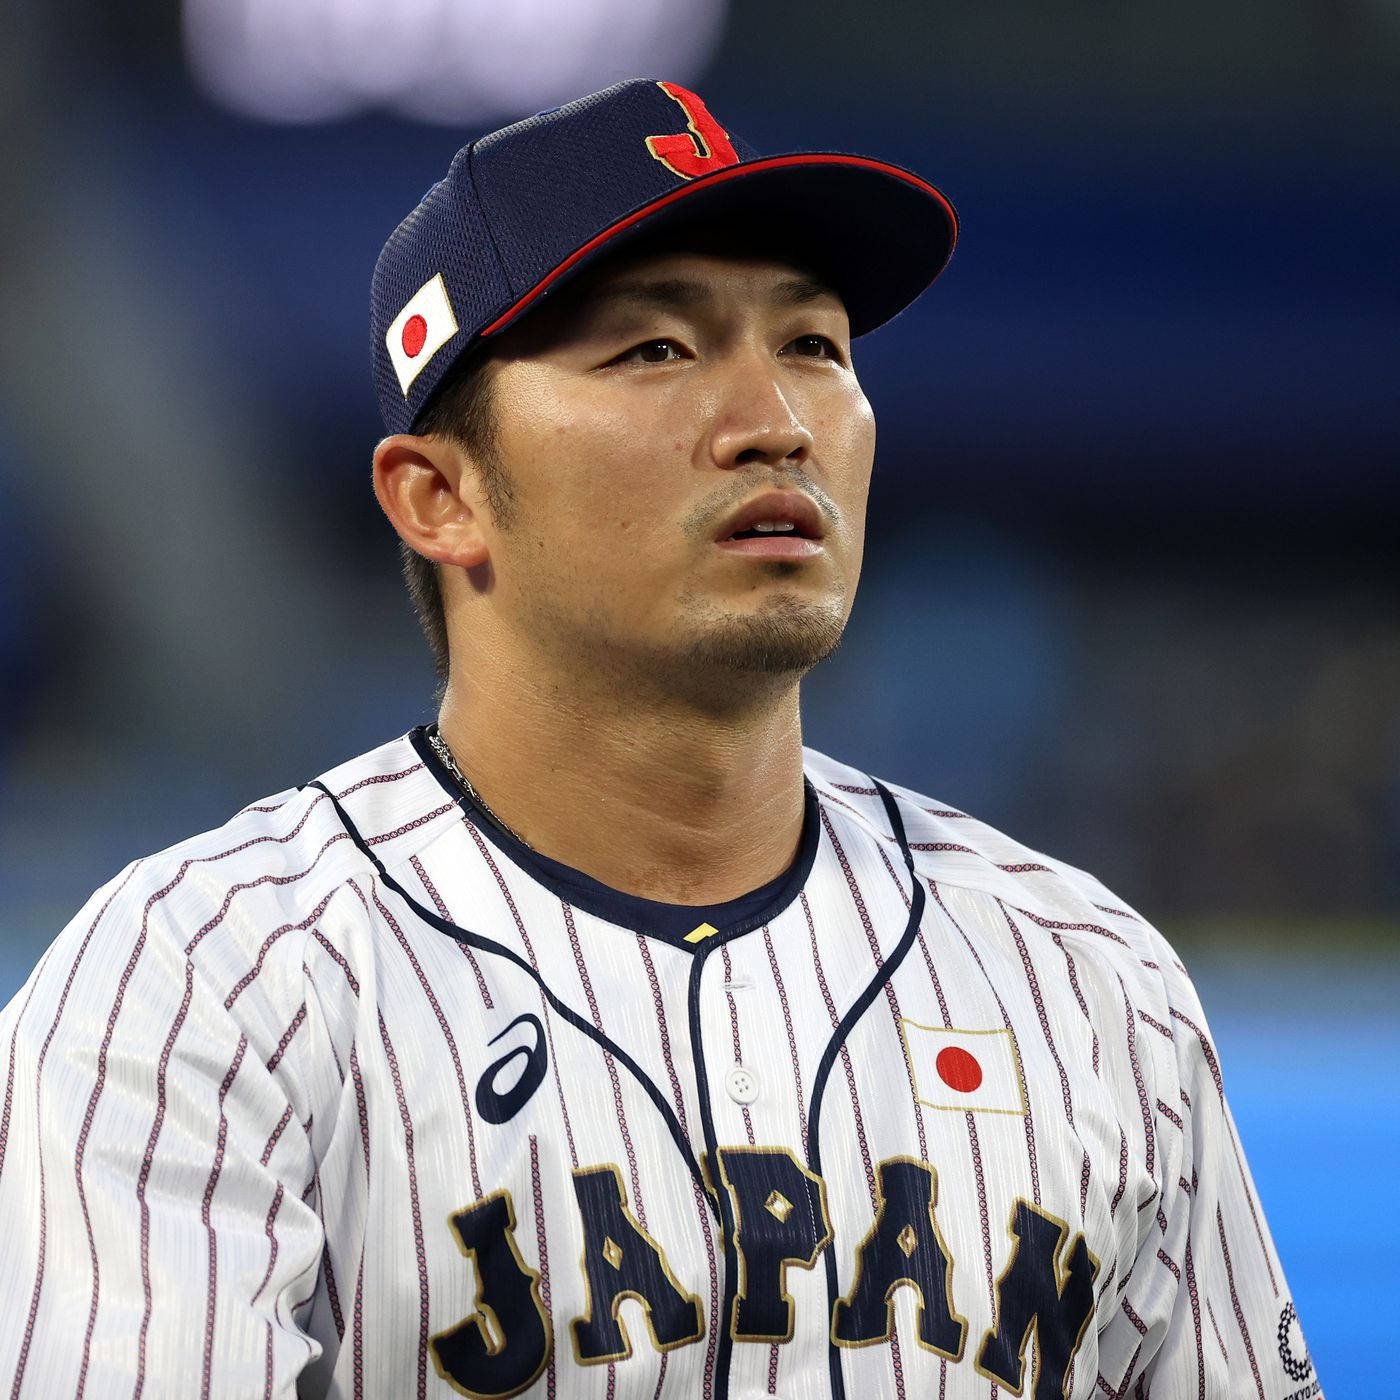 Japanskbasebollspelare Seiya Suzuki. Wallpaper